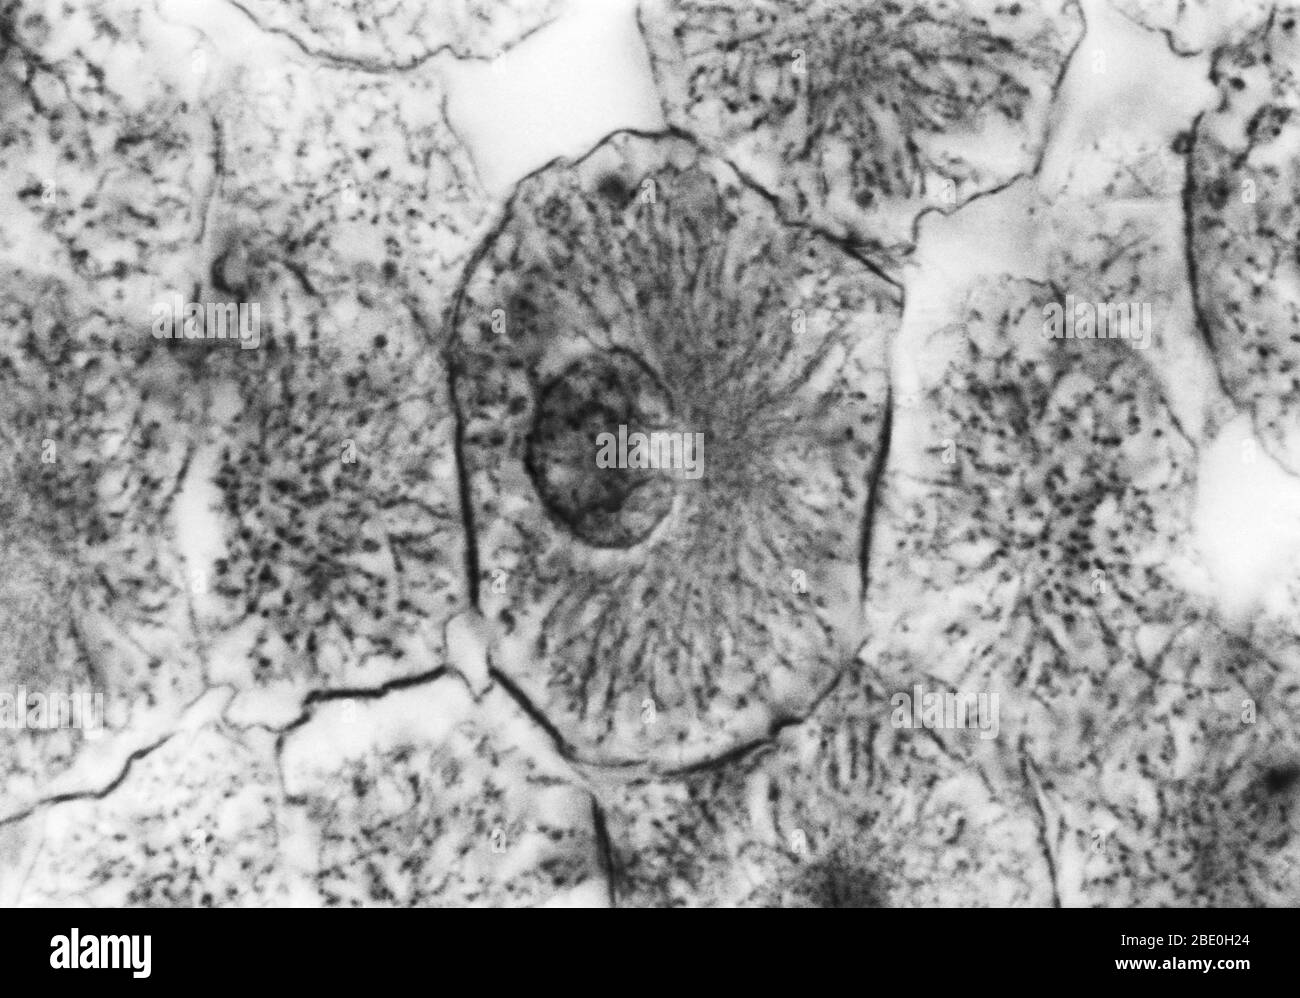 Micrografo ligero que muestra mitosis en blastula blanca, profase. No se ha proporcionado ampliación. Mitosis, el método habitual de división celular, caracterizado típicamente por la resolución de la cromatina del núcleo en forma de hilo, que se condensa en cromosomas, cada uno de los cuales se separa longitudinalmente en dos partes, una parte de cada cromosoma que se retiene en cada una de las dos células nuevas que resultan de la célula original. Las cuatro fases principales de la mitosis son la profase, la metafase, la anafase y la telofase. Blastula, un embrión animal en la etapa inmediatamente posterior a la división del óvulo fertilizado Foto de stock